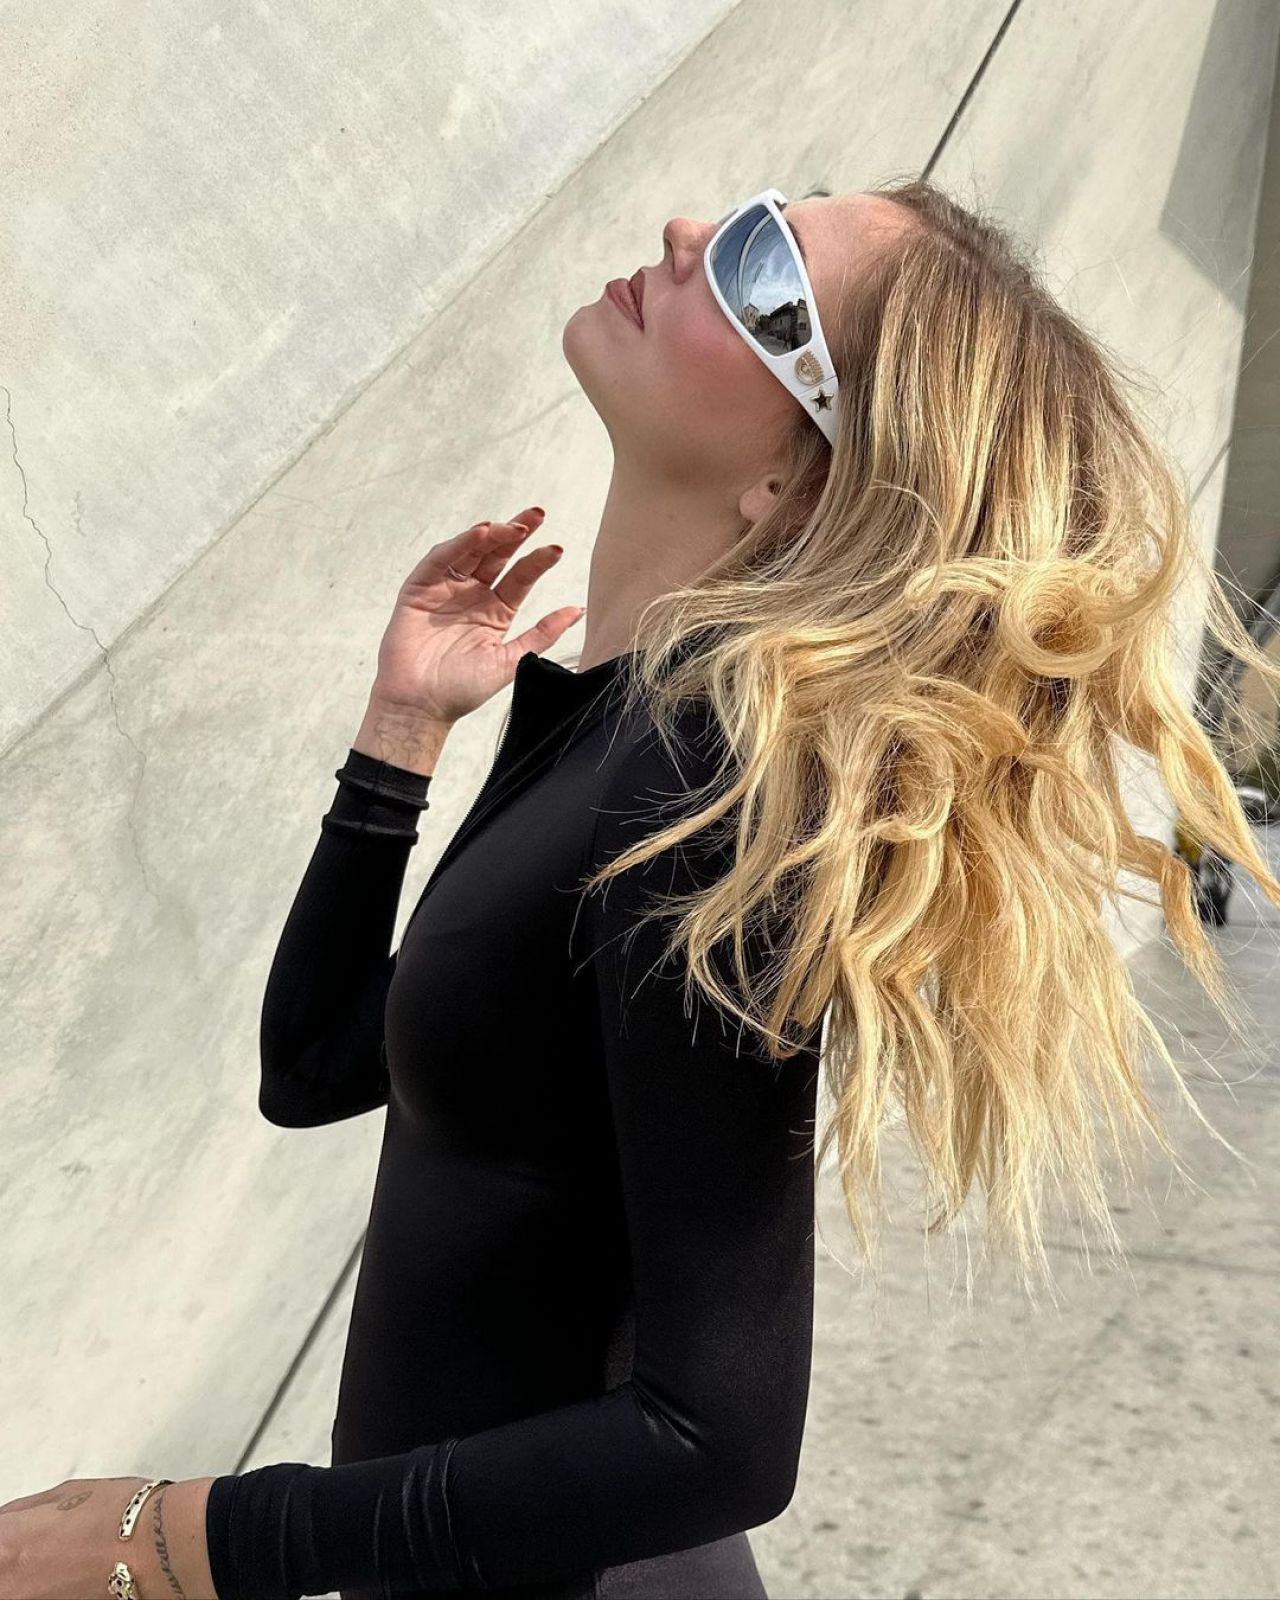 Chiara Ferragni ✨ on Instagram: Look of the day 💚 Wearing